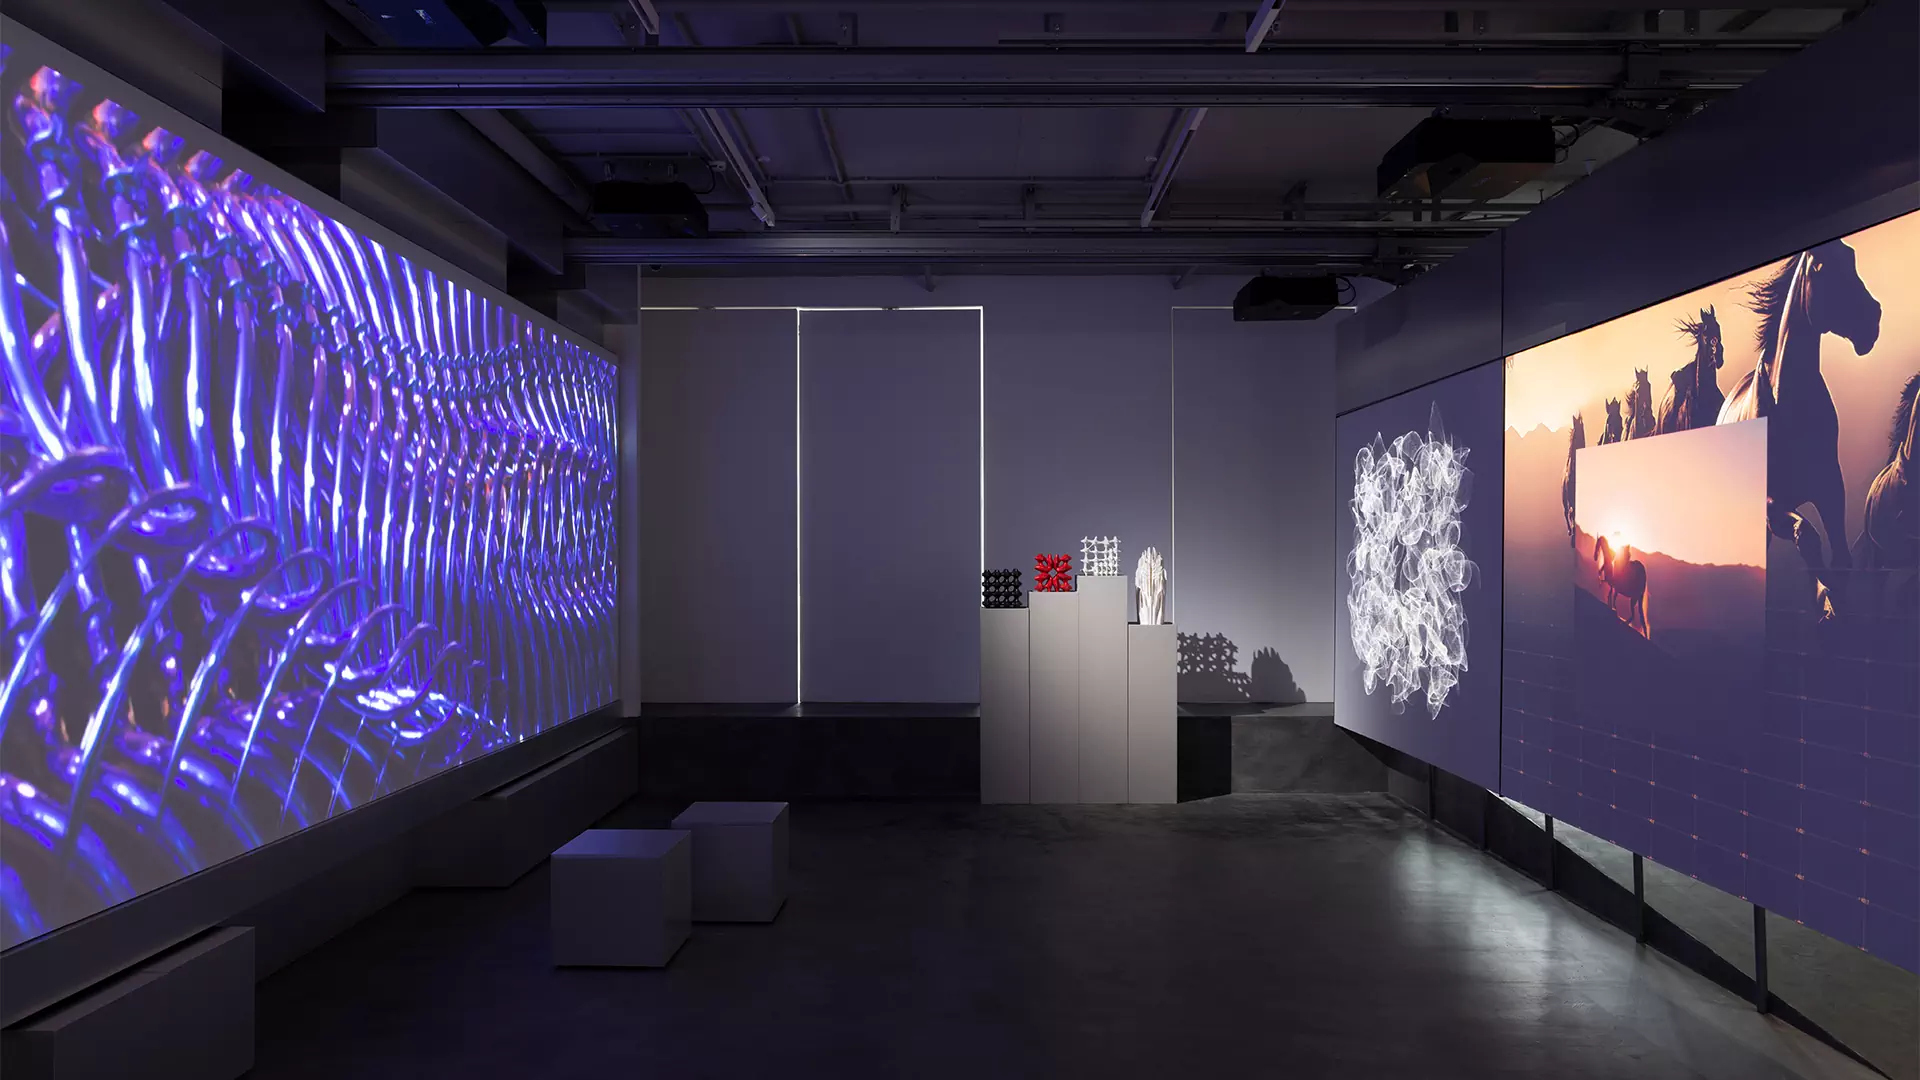 Динамичная подсветка и стальные стены в интерьере галереи фиджитал-искусства — проект Poisk Bureau